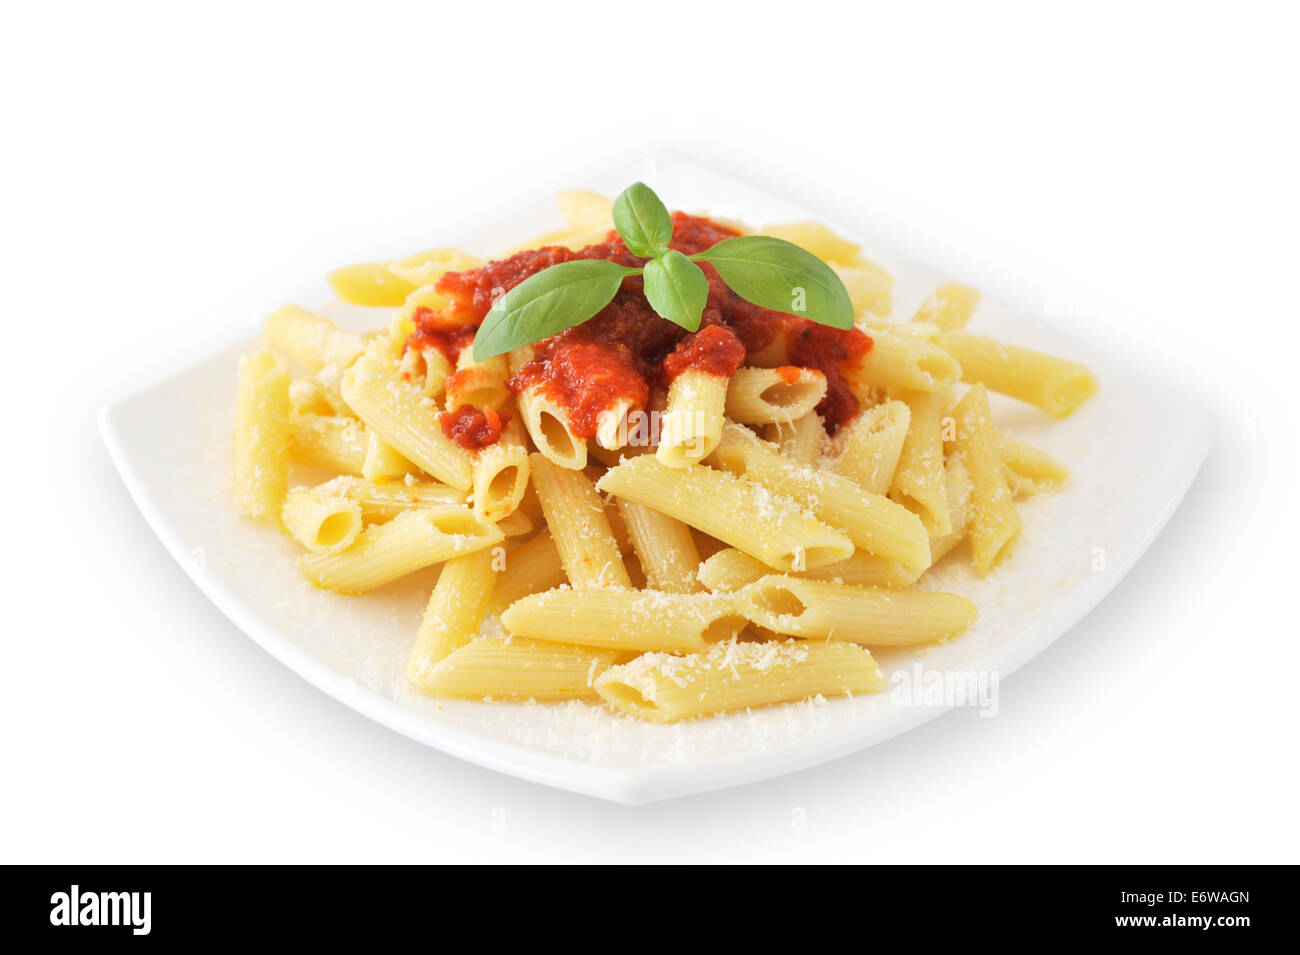 Eine typische italienische Teigwaren Pasta mit Tomaten-Ketchup, Parmesan und Basilikum in weiße Schale. Vegetarisches Essen. Gehobene italienische Küche. Stockfoto